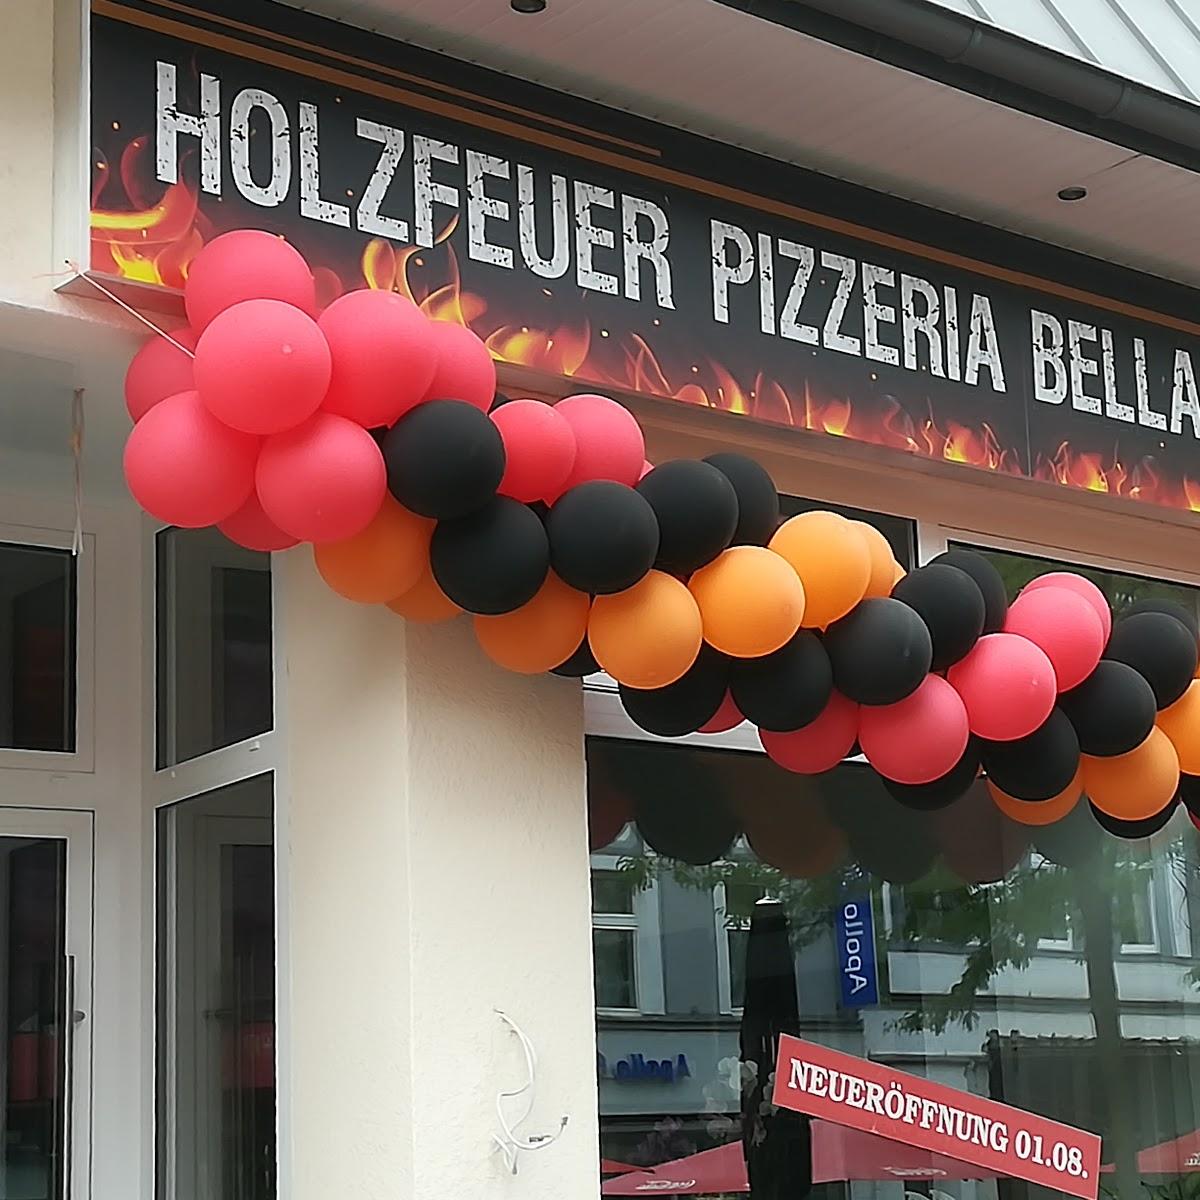 Restaurant "Holzfeuer Pizzeria Bella Peppone" in Herne